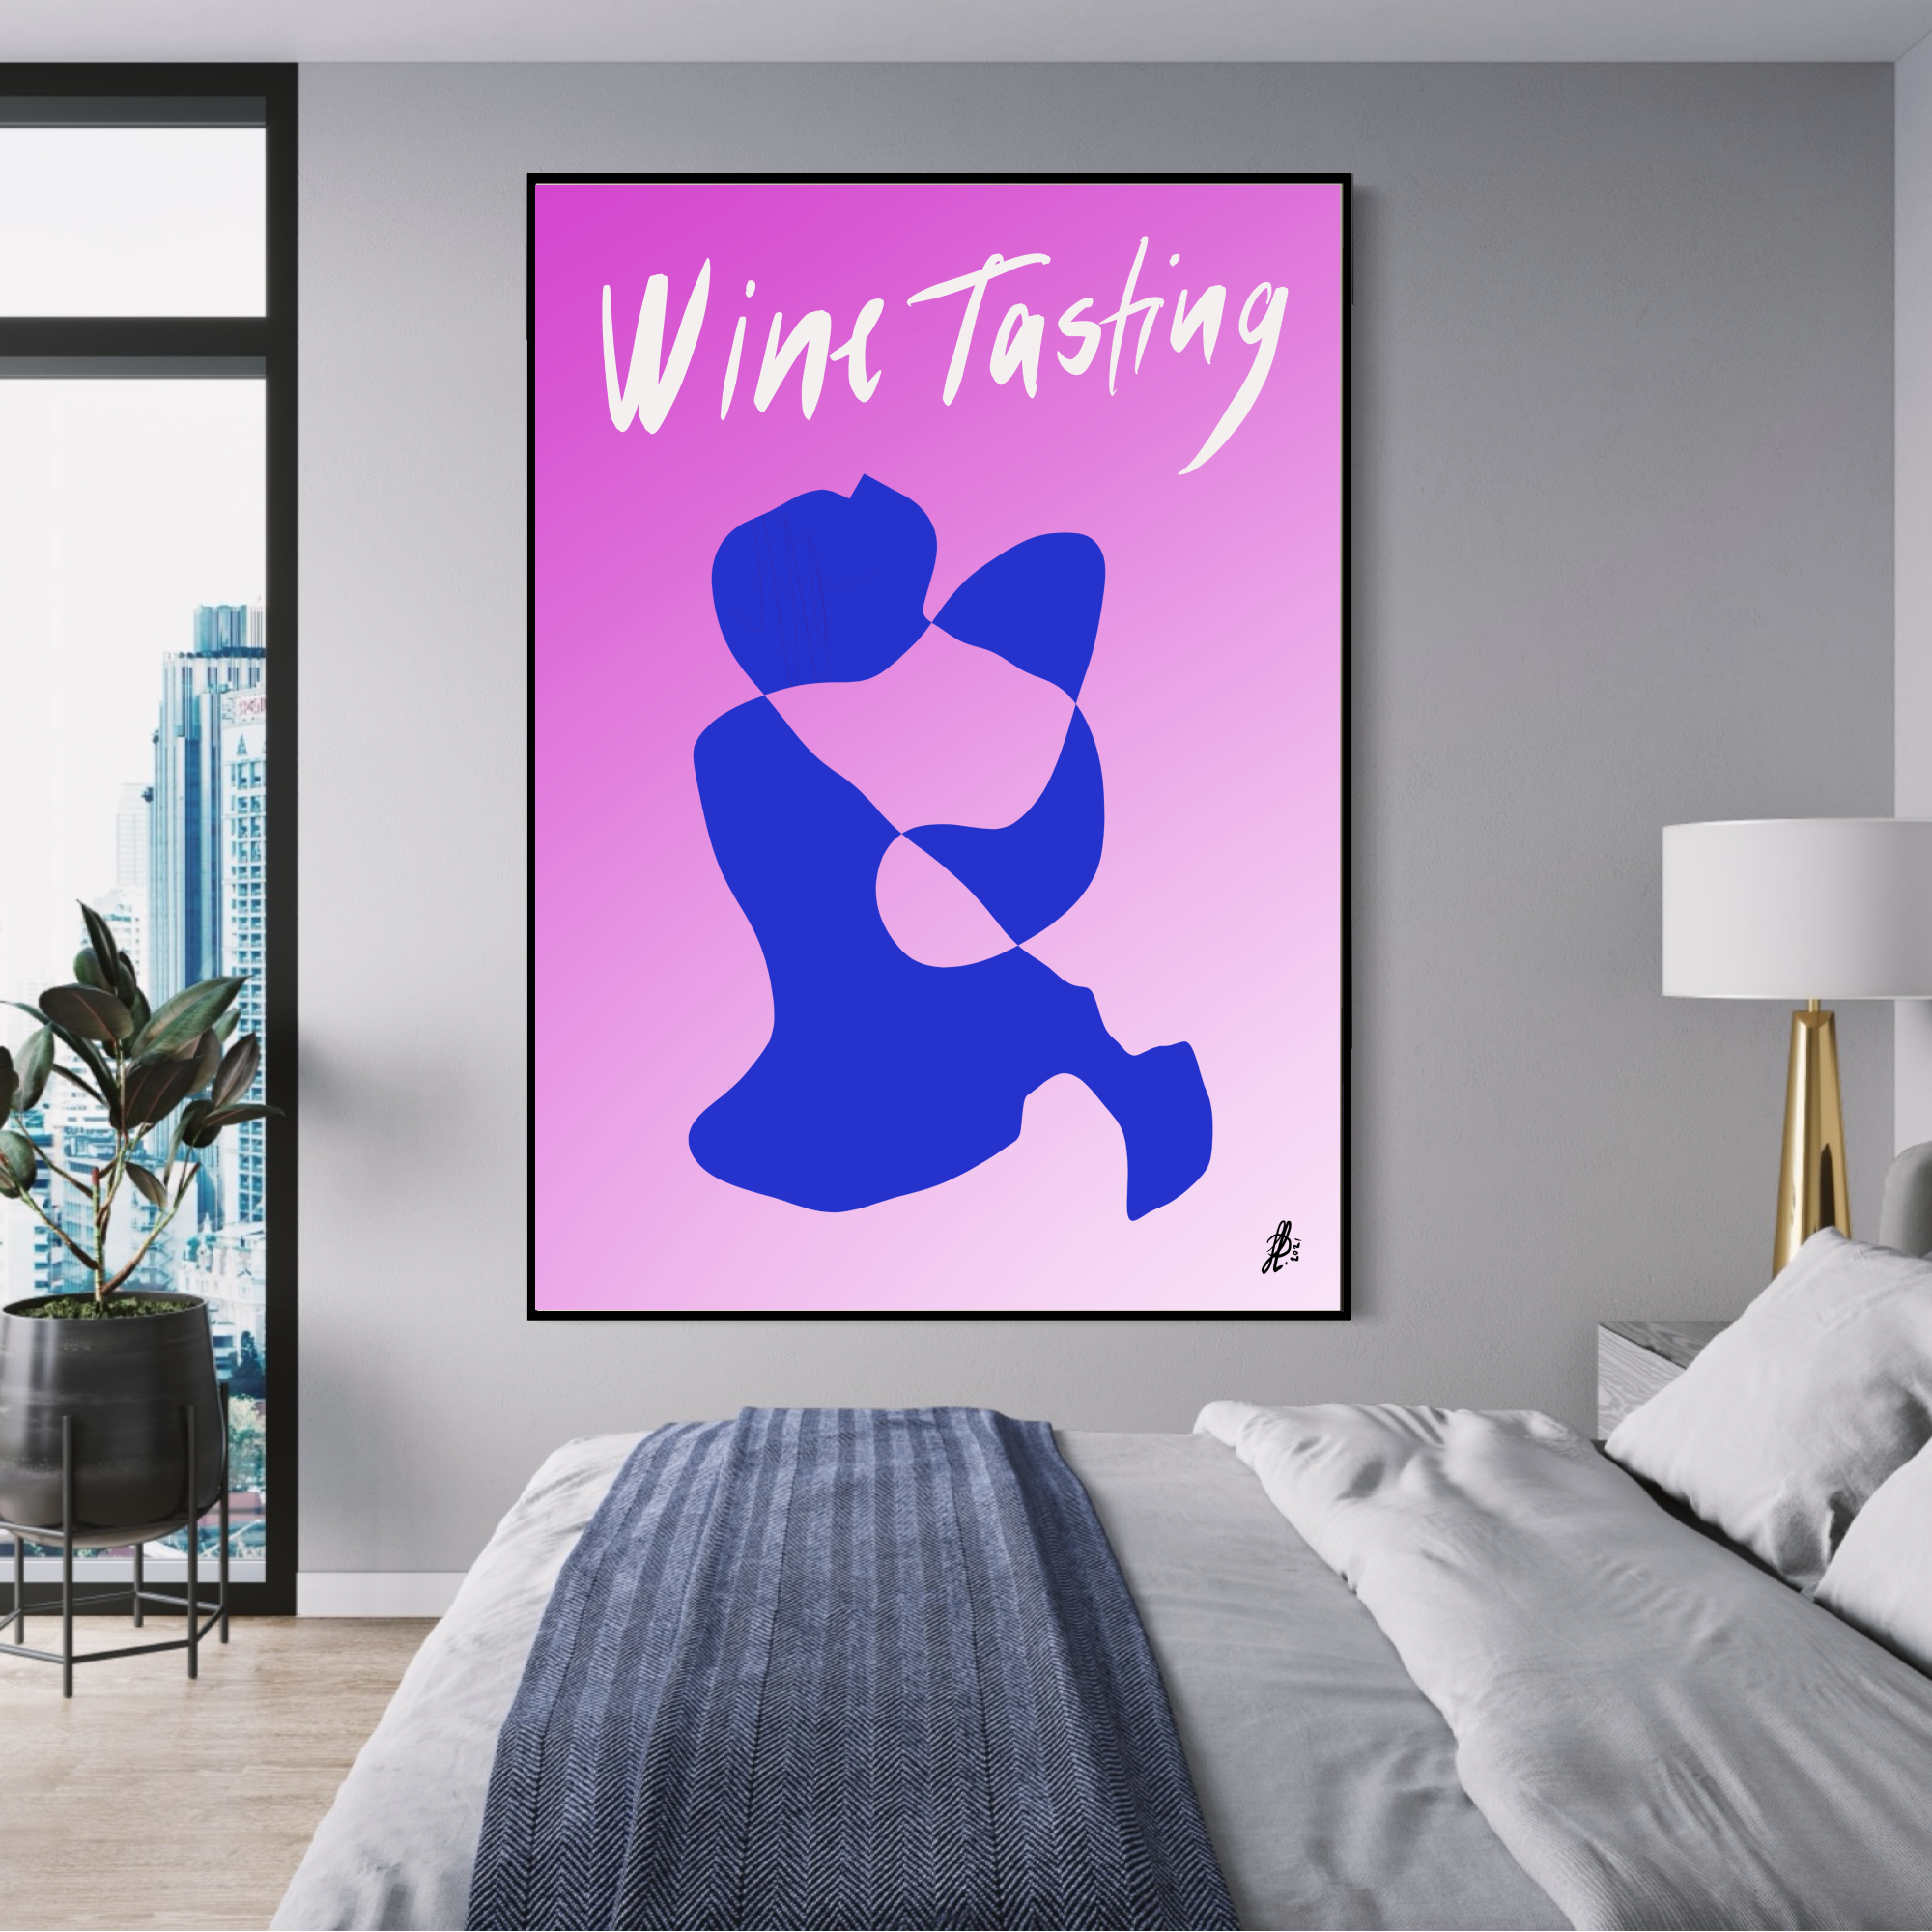 Canvas Print: "Wine Tasting #2"